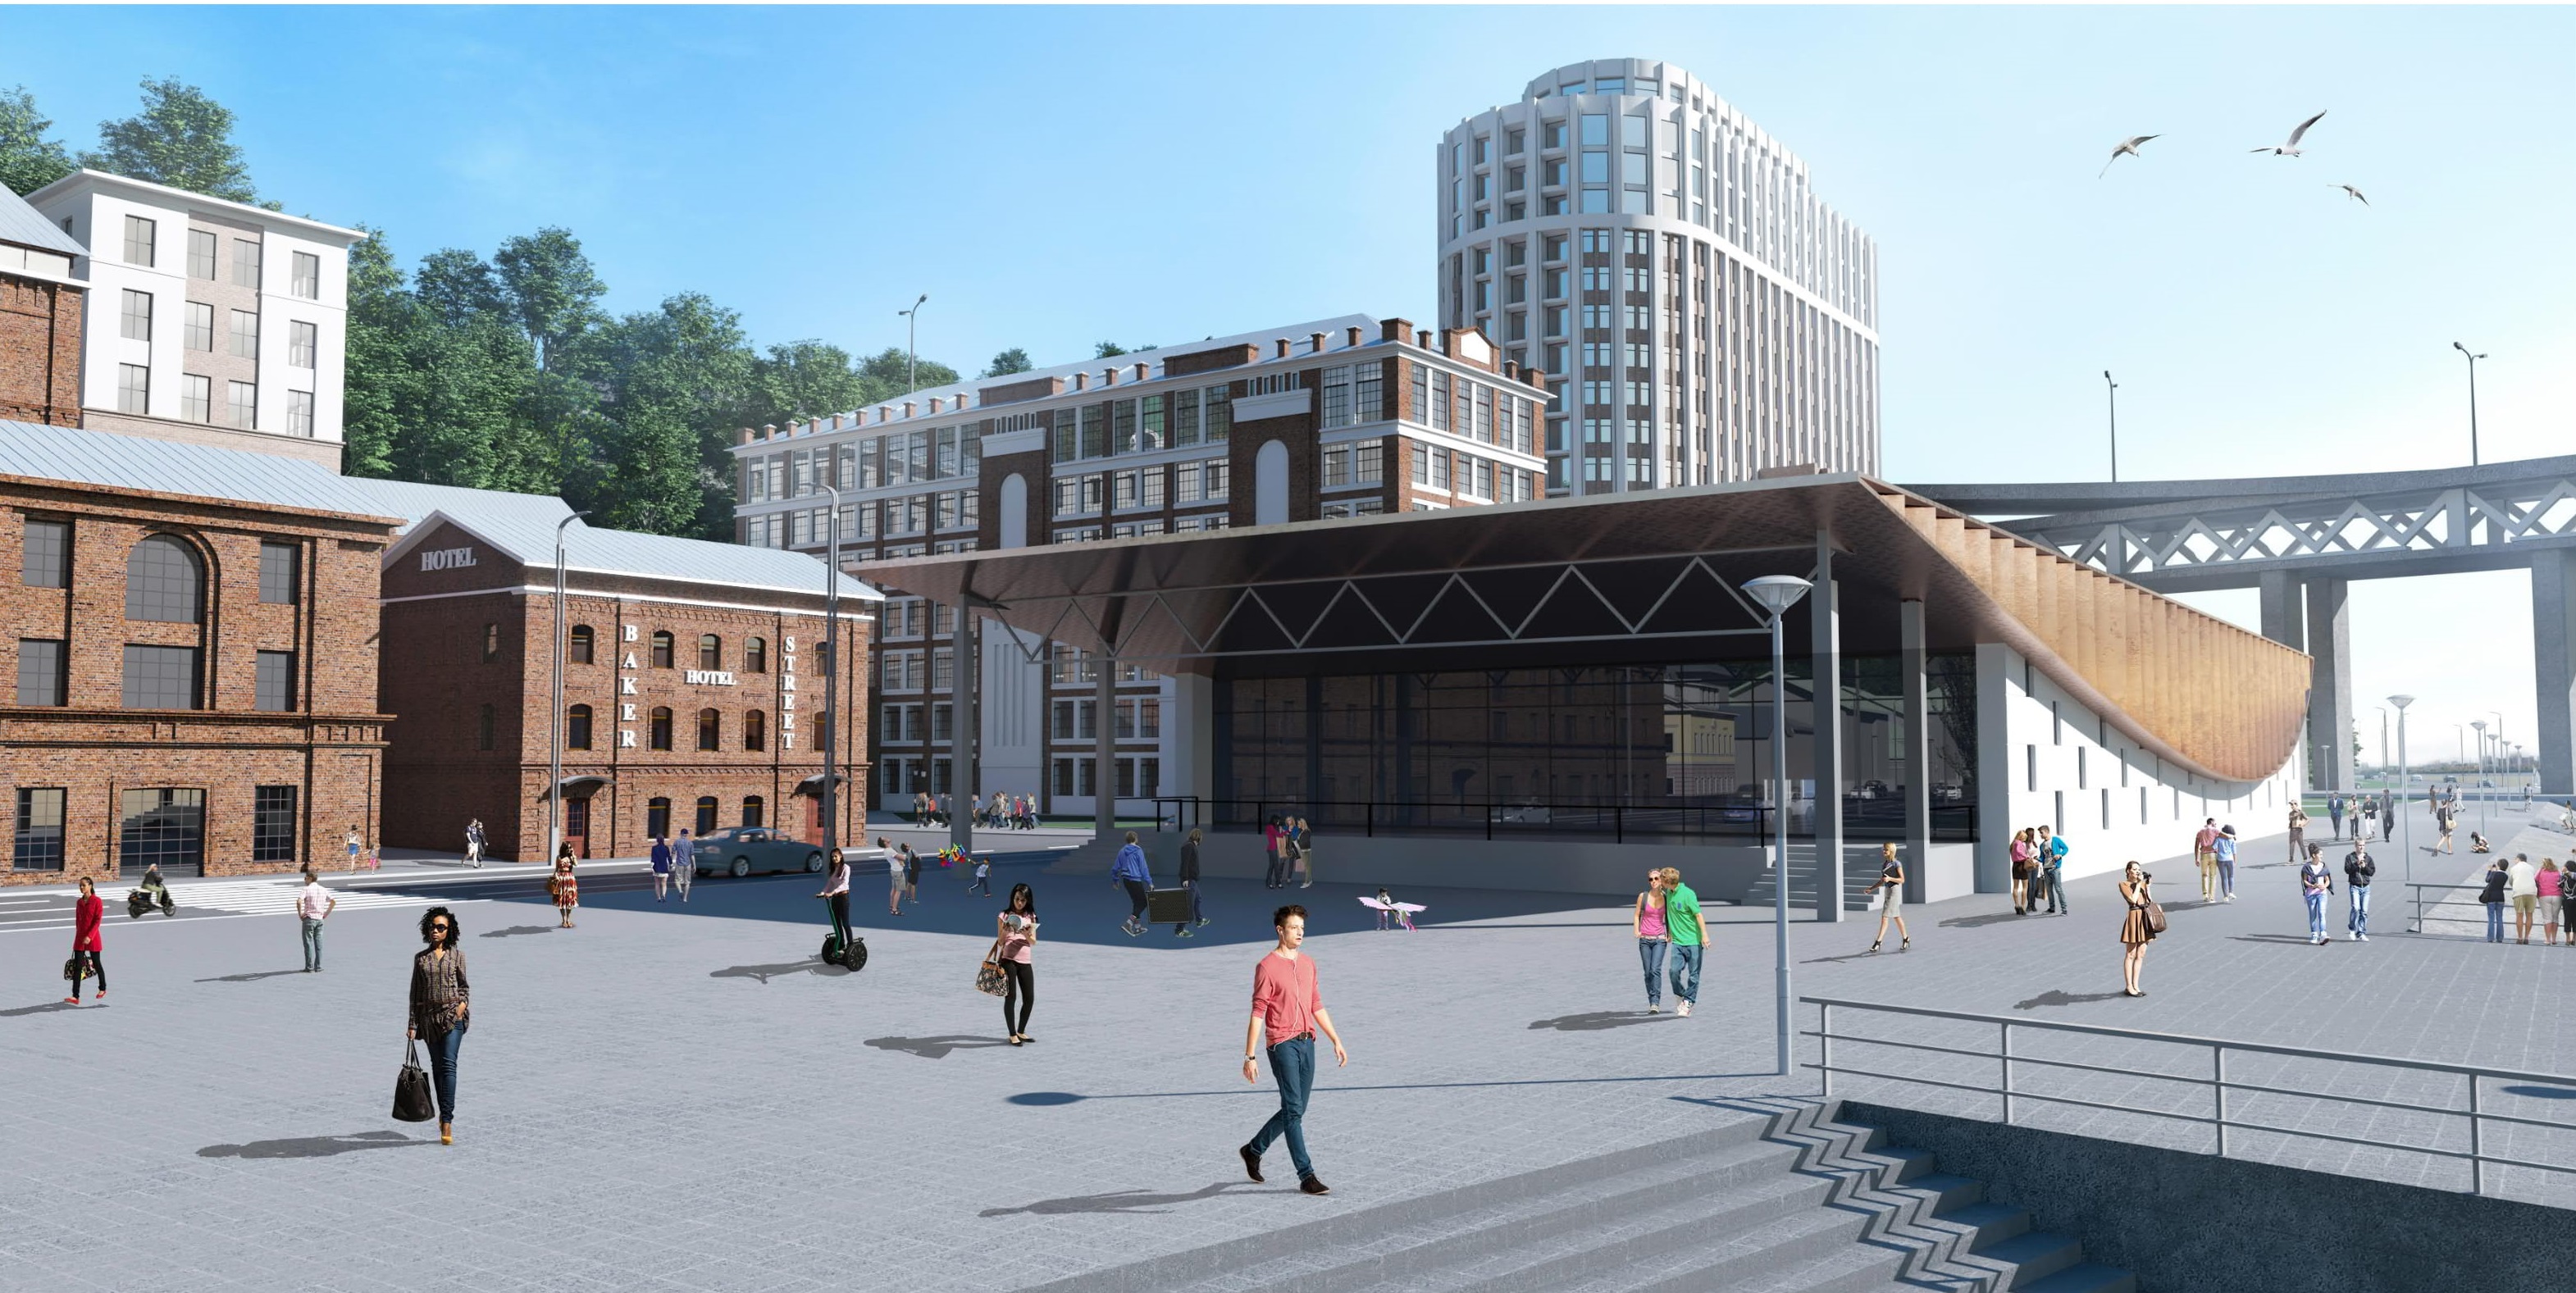  Первая ивент-площадка  появится на улице Черниговской уже в 2019 году в рамках проекта редевелопмента - фото 2